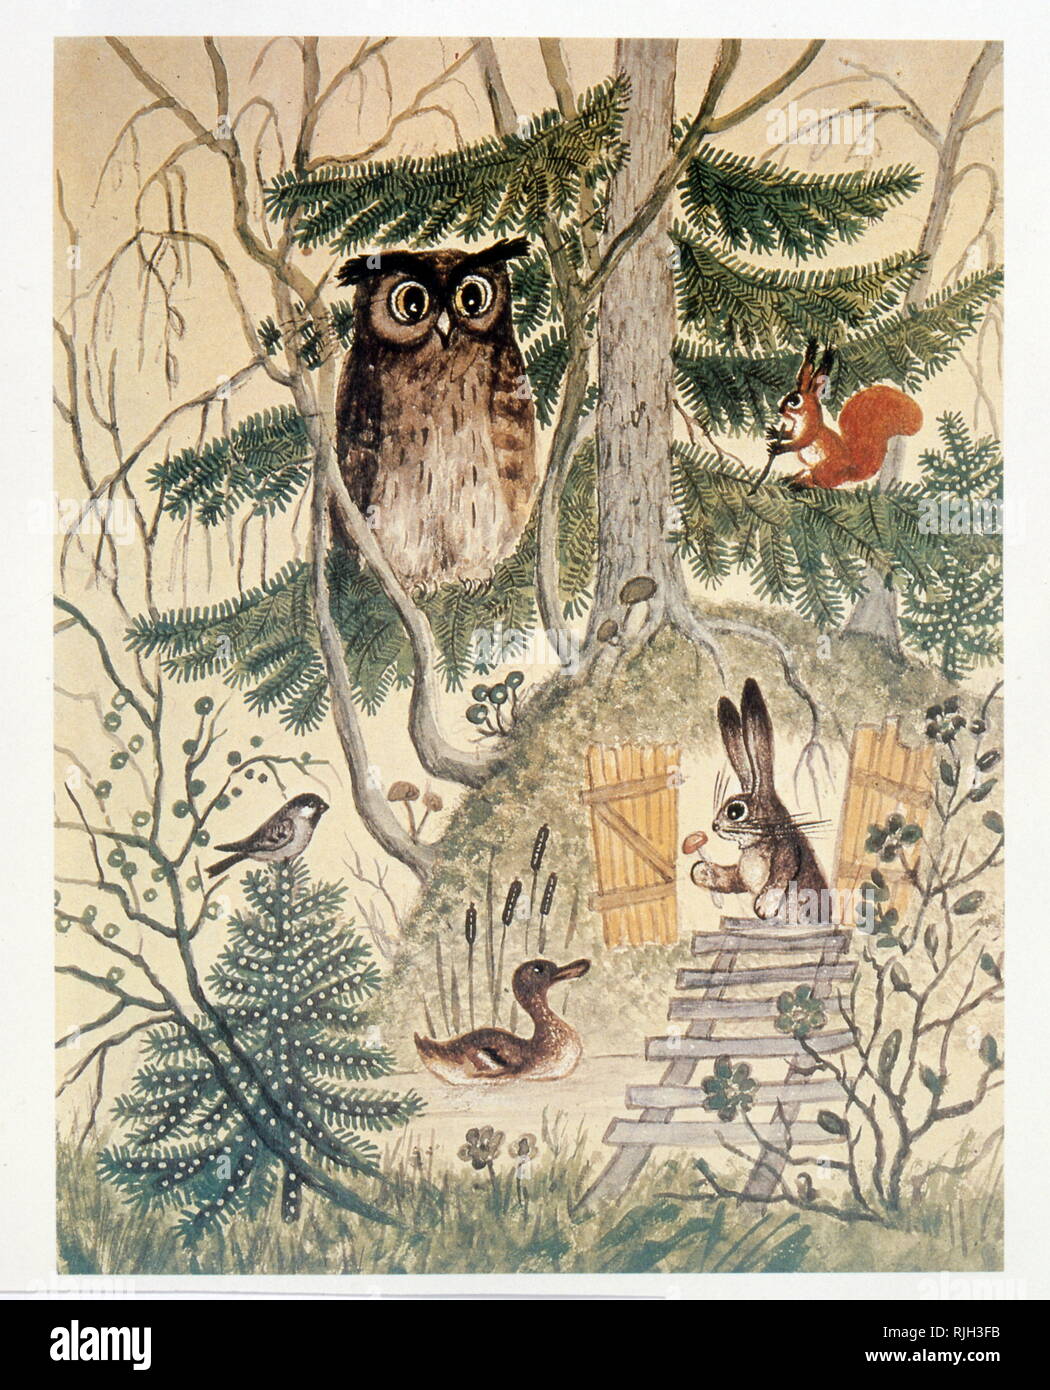 Fédération children's book illustration représentant un hibou, un canard, un écureuil et un lapin. 1890 Banque D'Images